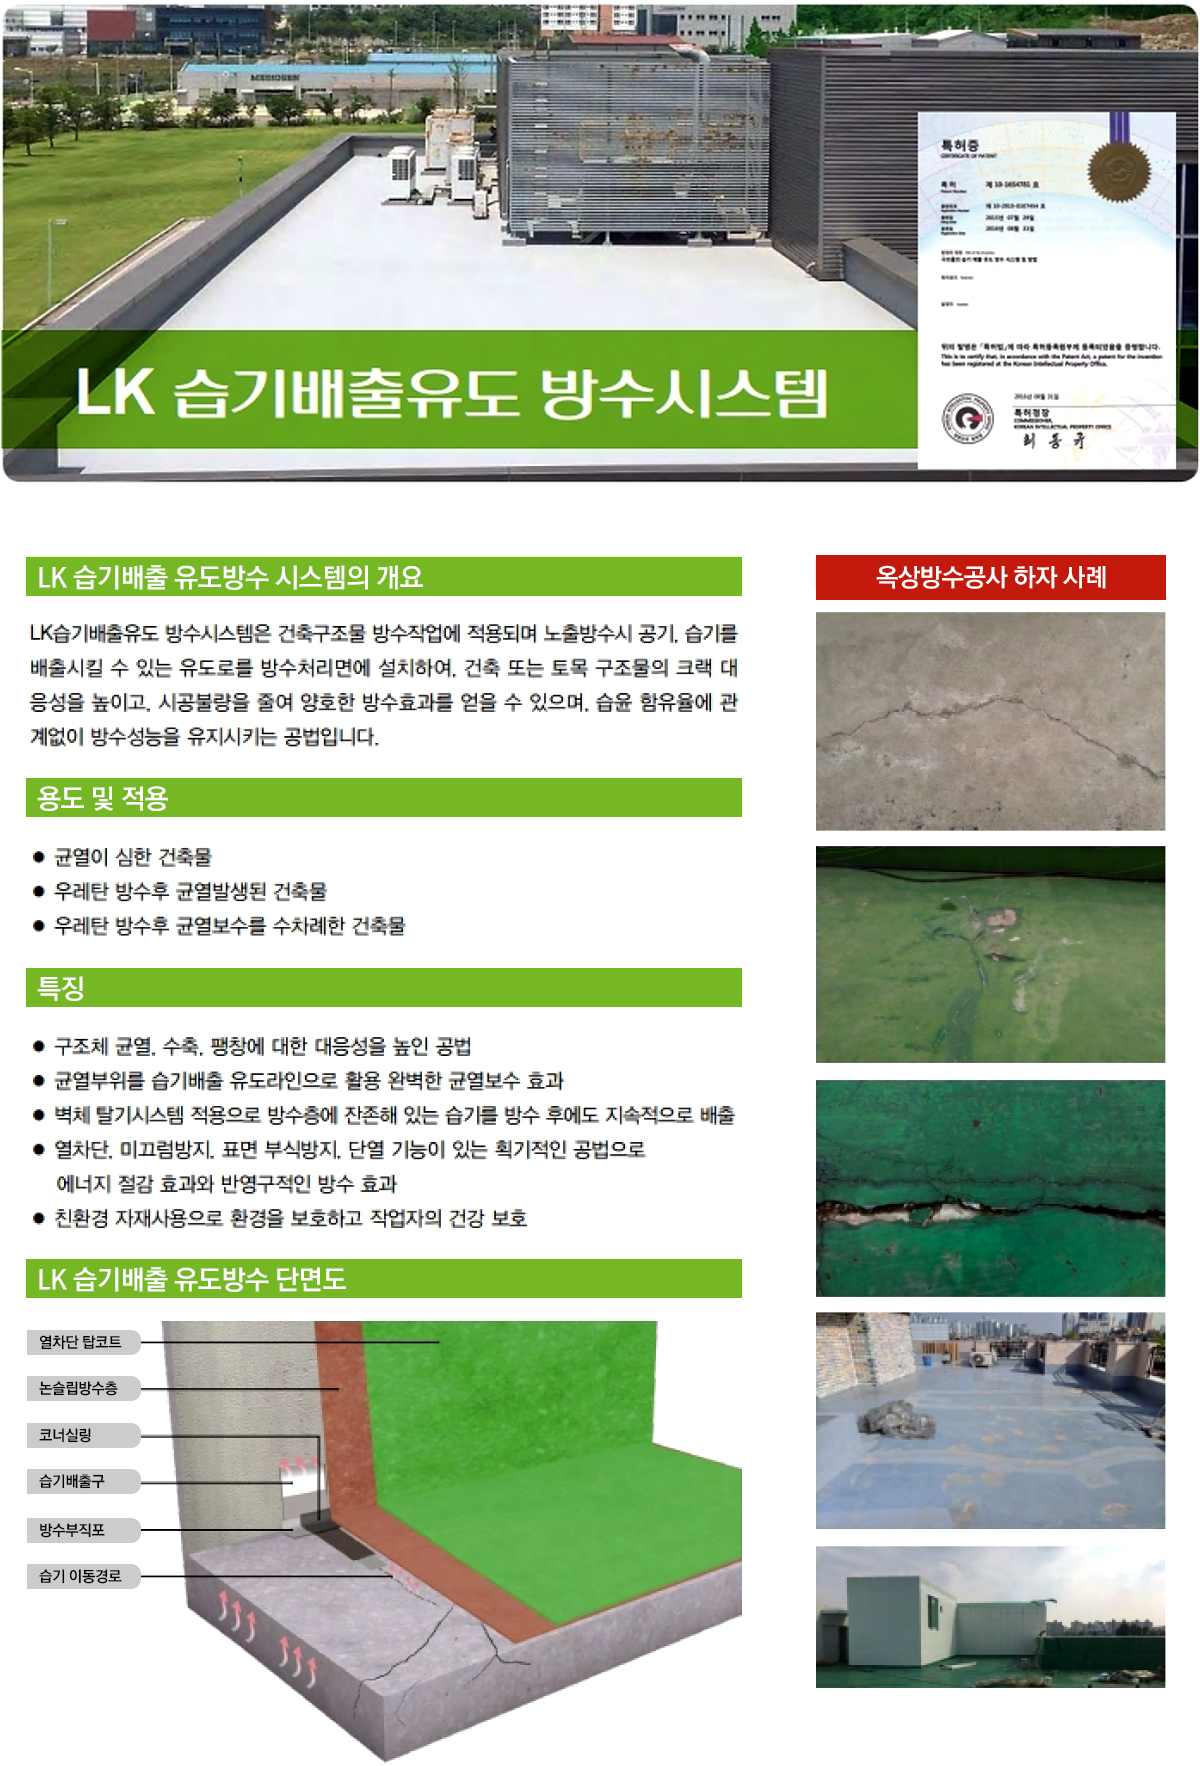 LK 습기배출 유도방수 시스템의 개요, 용도 및 적용, 특징, 단면도